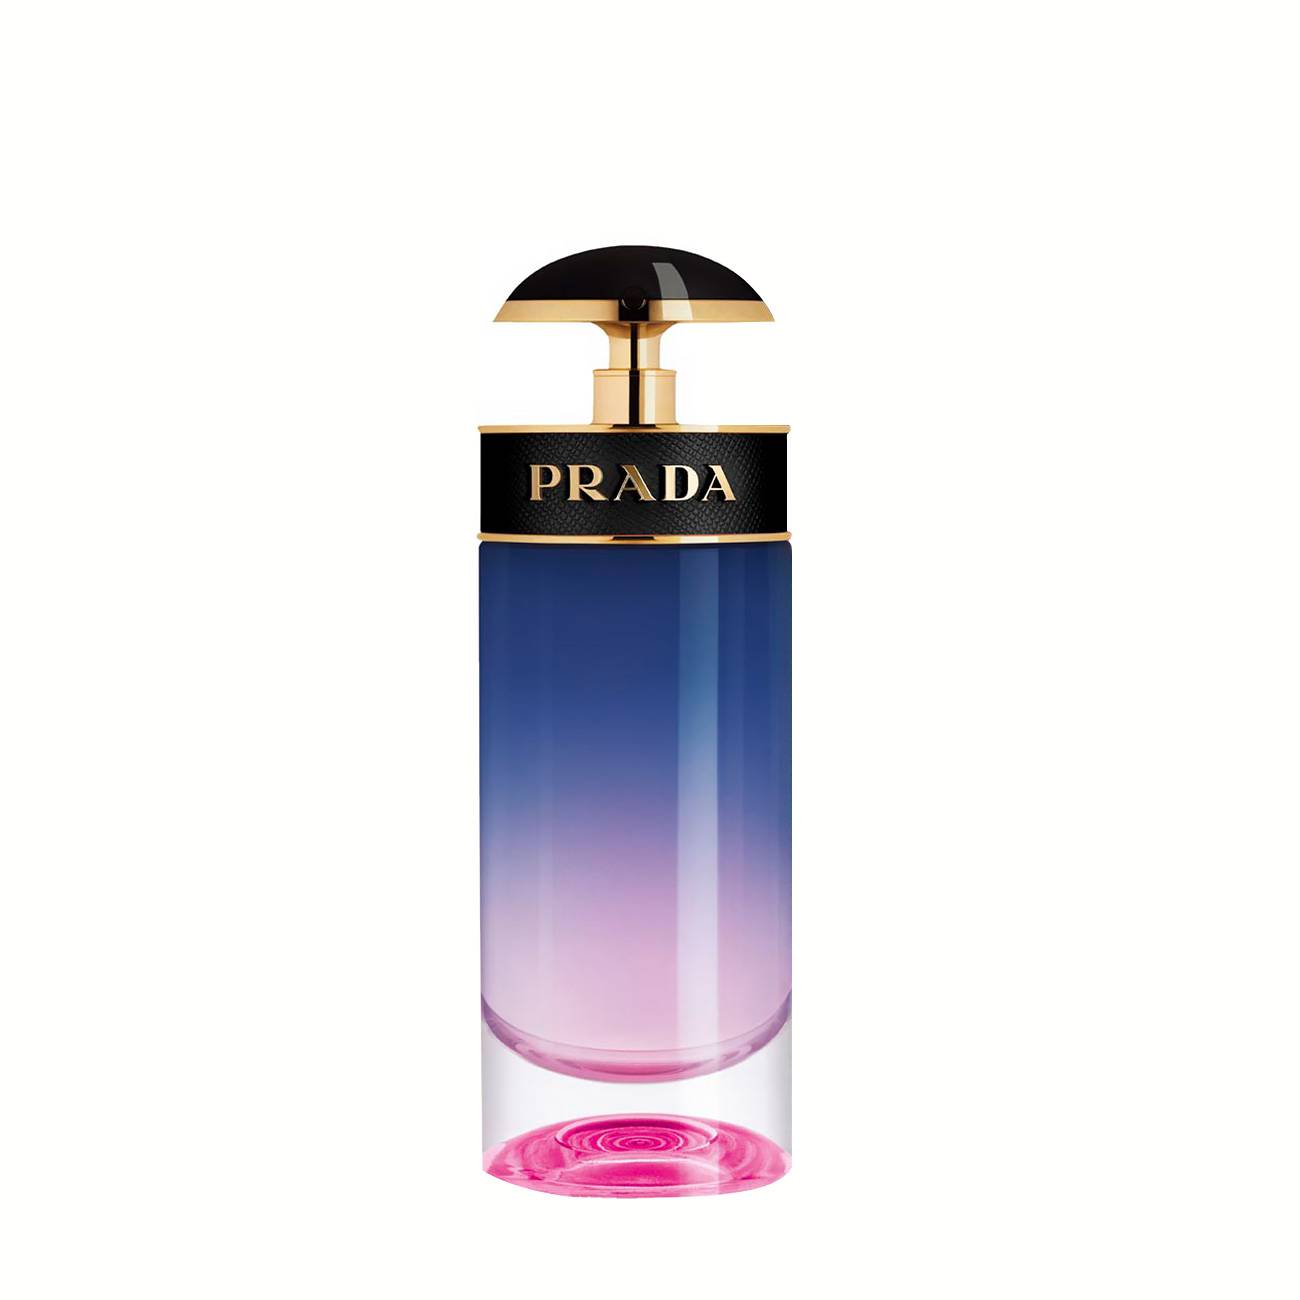 Apa de Parfum Prada CANDY NIGHT 80ml cu comanda online